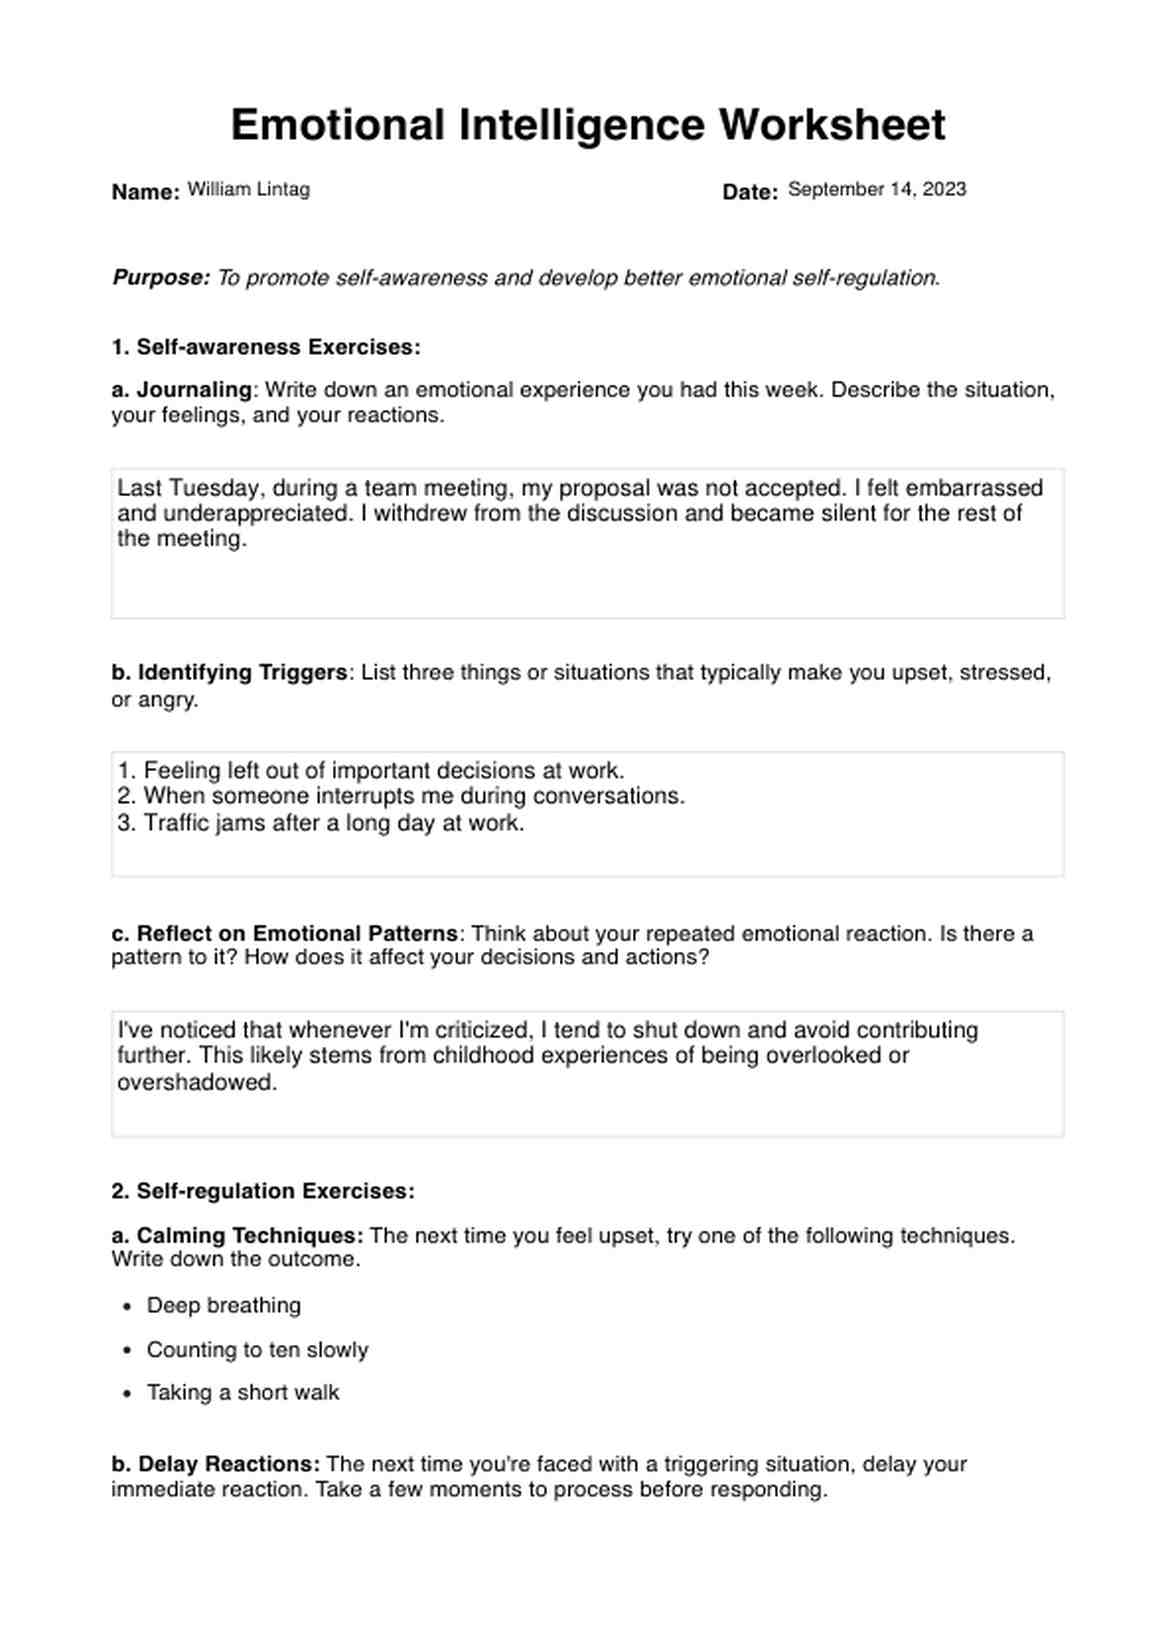 Emotional Intelligence Worksheets PDF Example